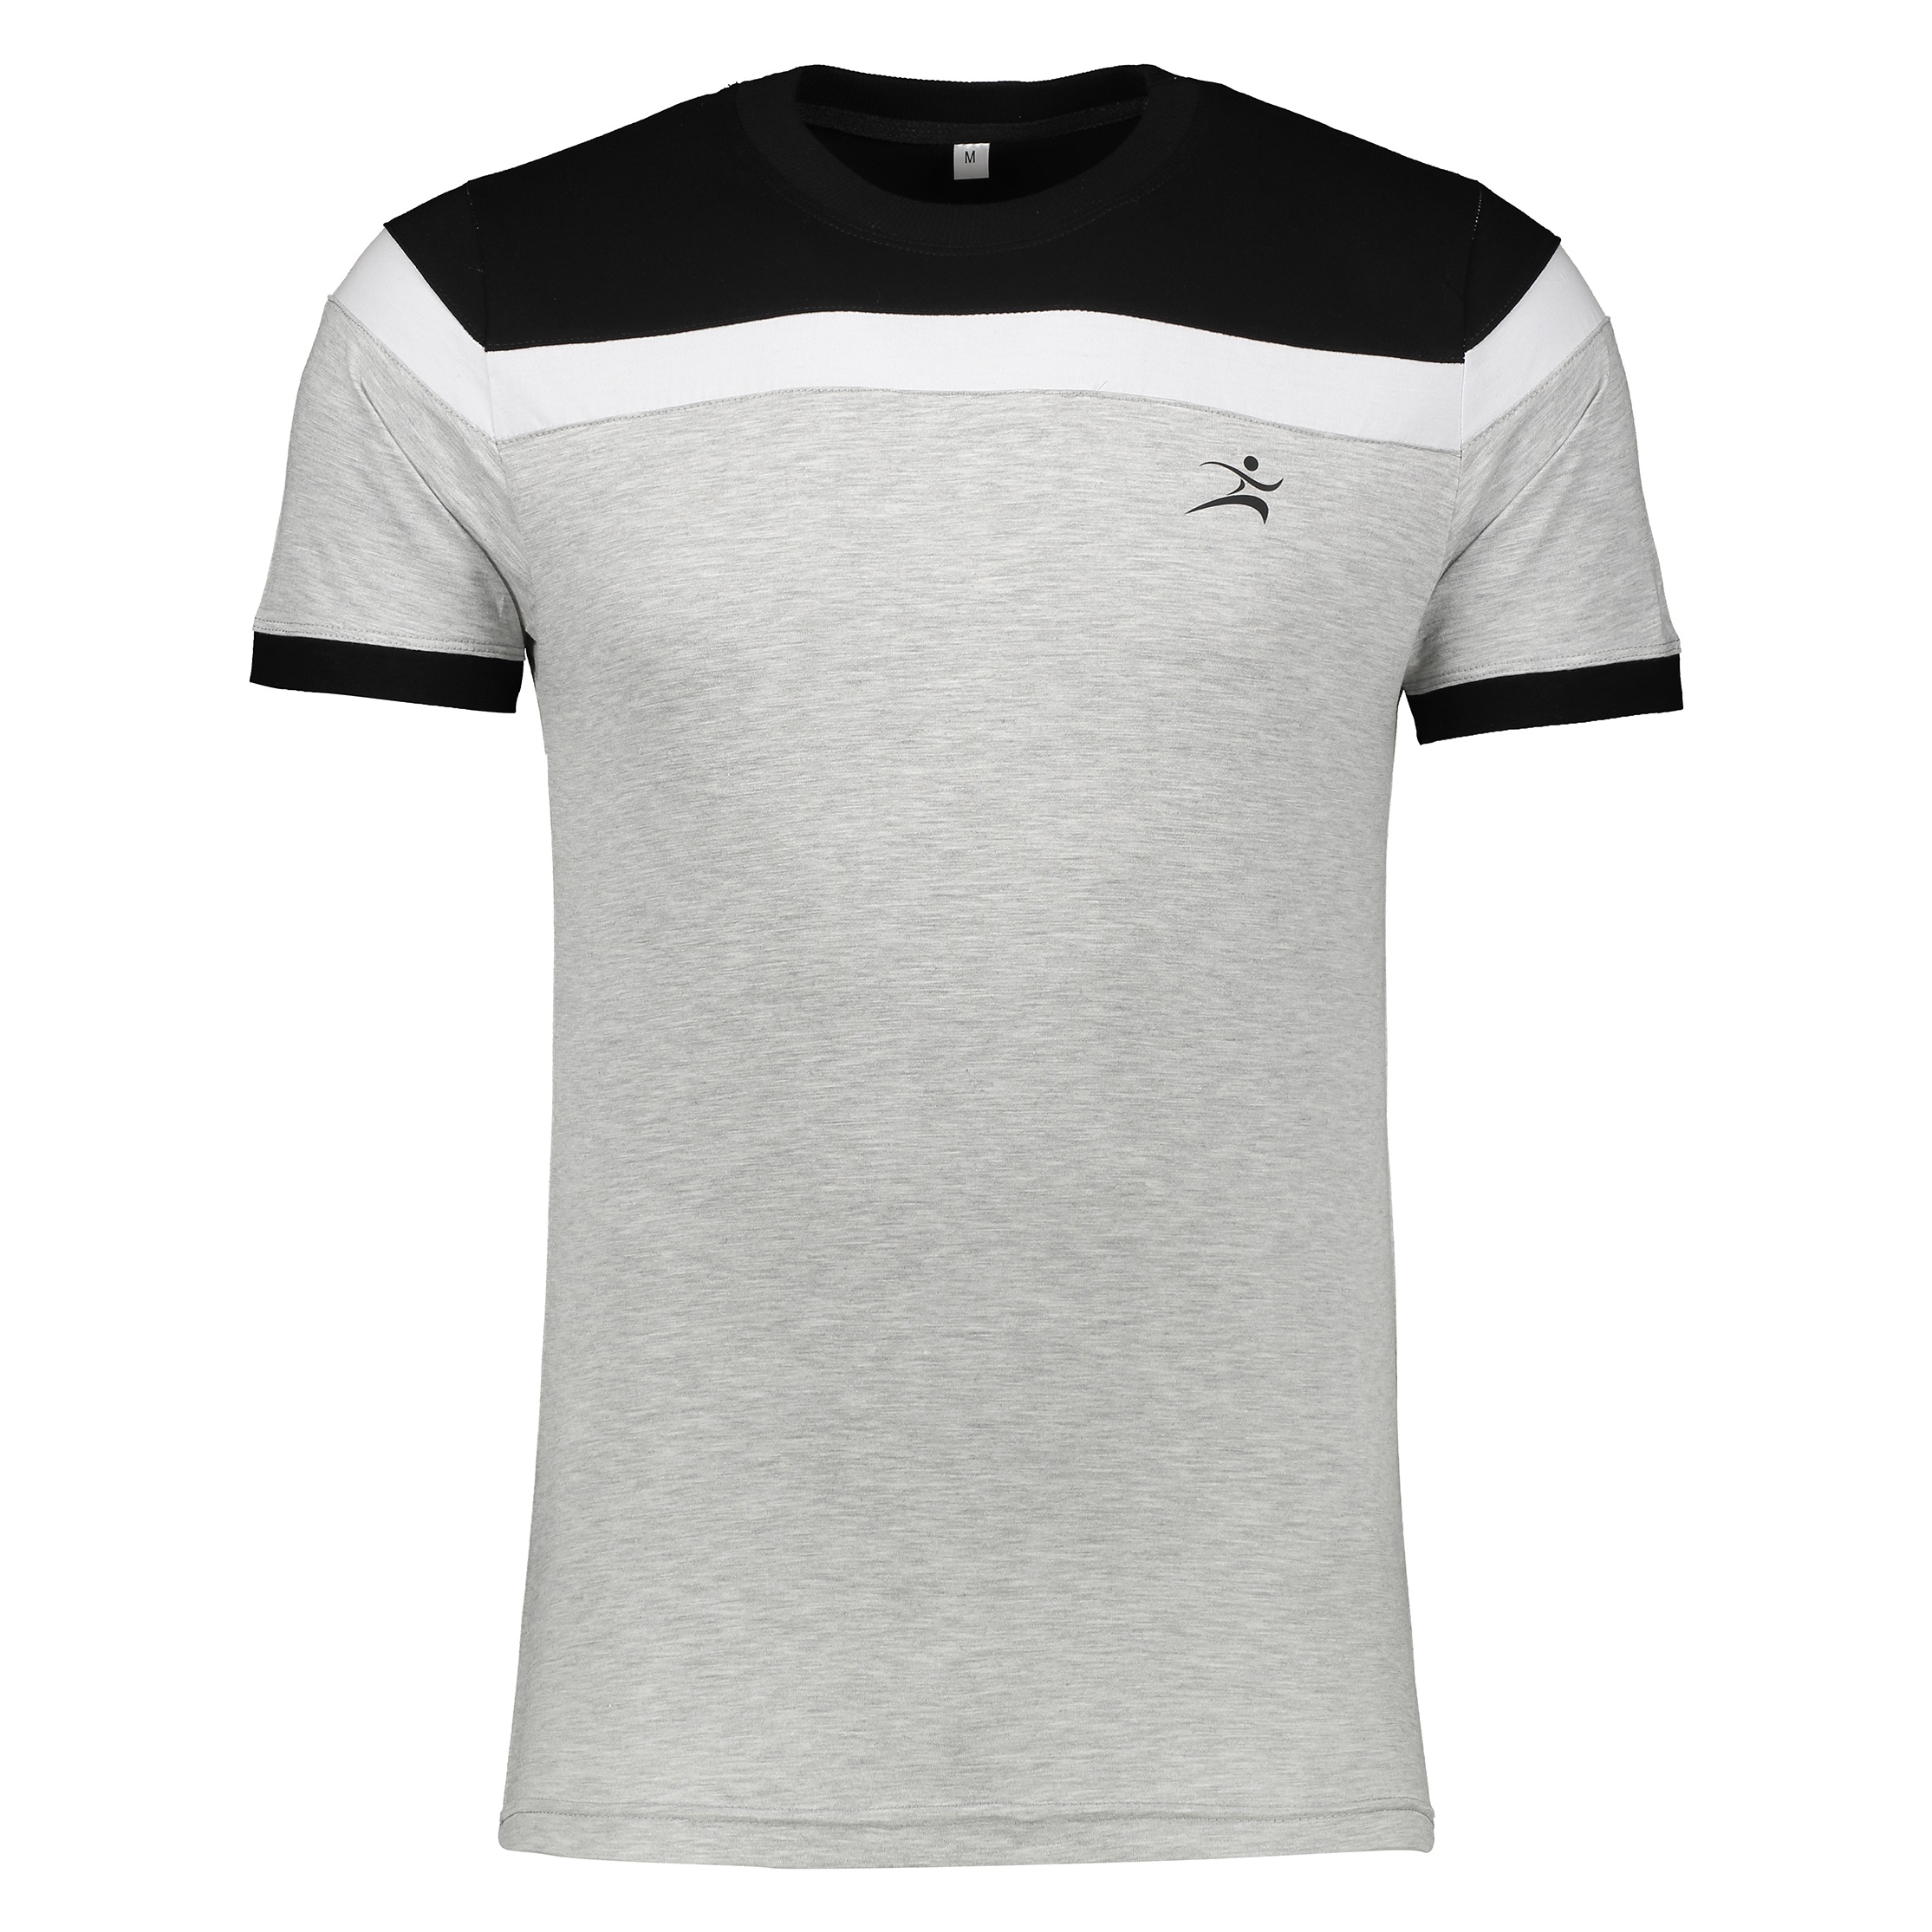 تی شرت ورزشی مردانه اسپرت من مدل k23-1 - مشکی - 1